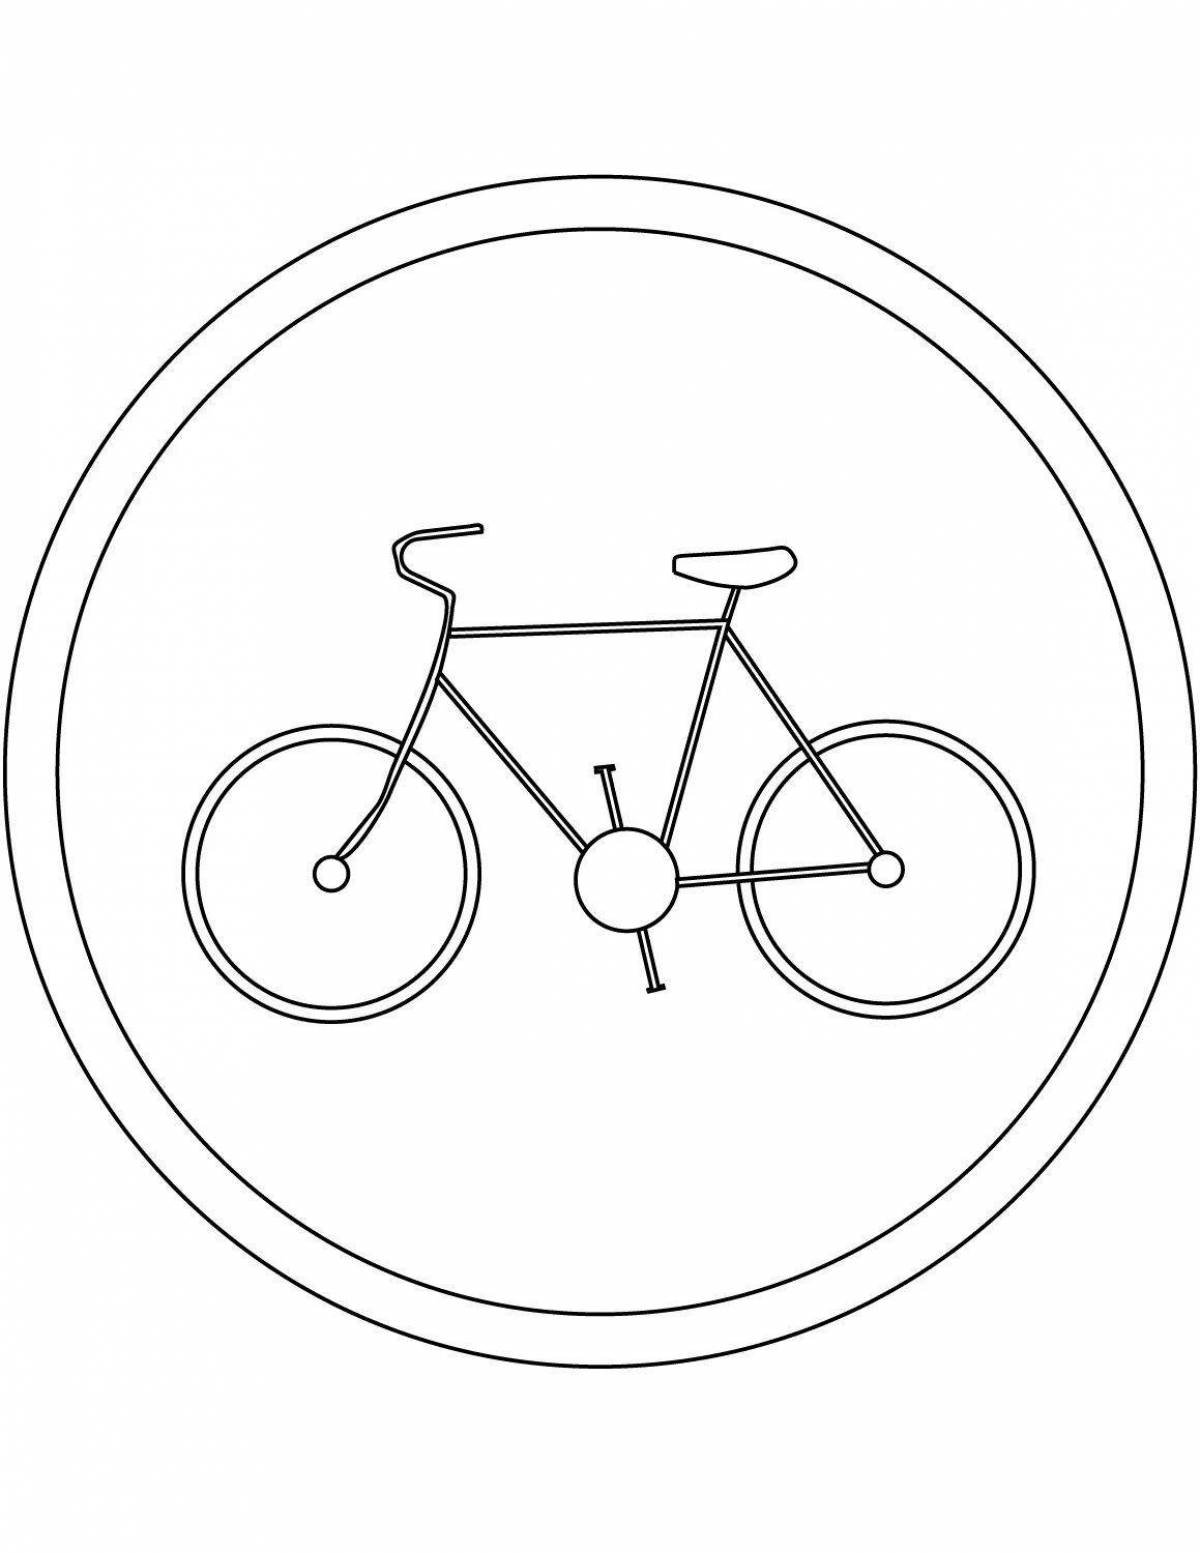 Велосипед в круге дорожный. Дорожный знак велосипедная дорожка раскраска. Дорожные знаки для детей раскраски велосипедная дорожка. Раскраска велосипедная дорожка для детей. Знак велосипедная дорожка раскраска для детей.